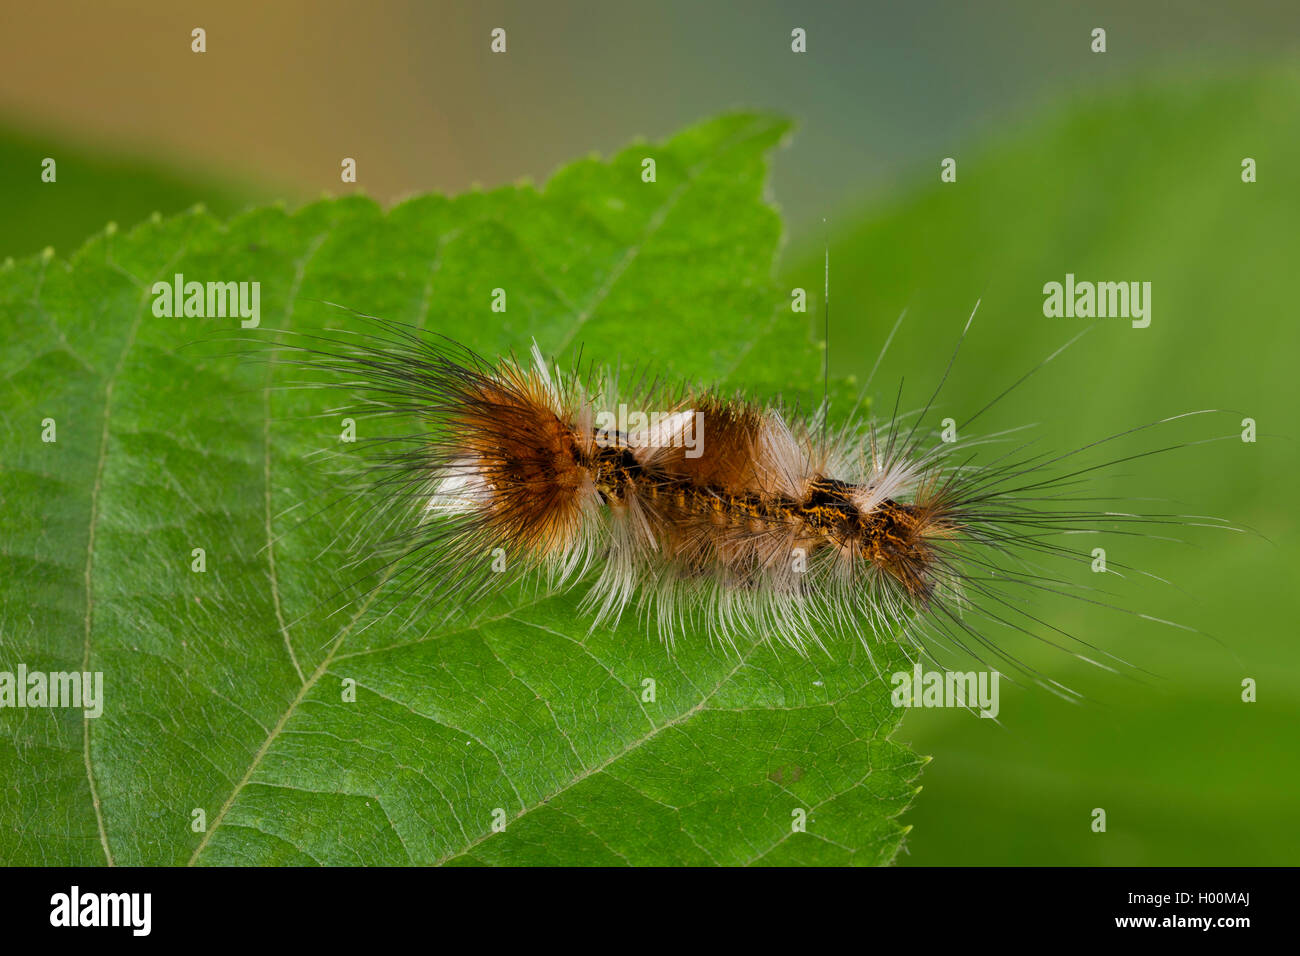 (Arctornis V noir l-nigrum, Arctornis pusillata, Phalaena l-nigrum), Caterpillar sur une feuille, Allemagne Banque D'Images